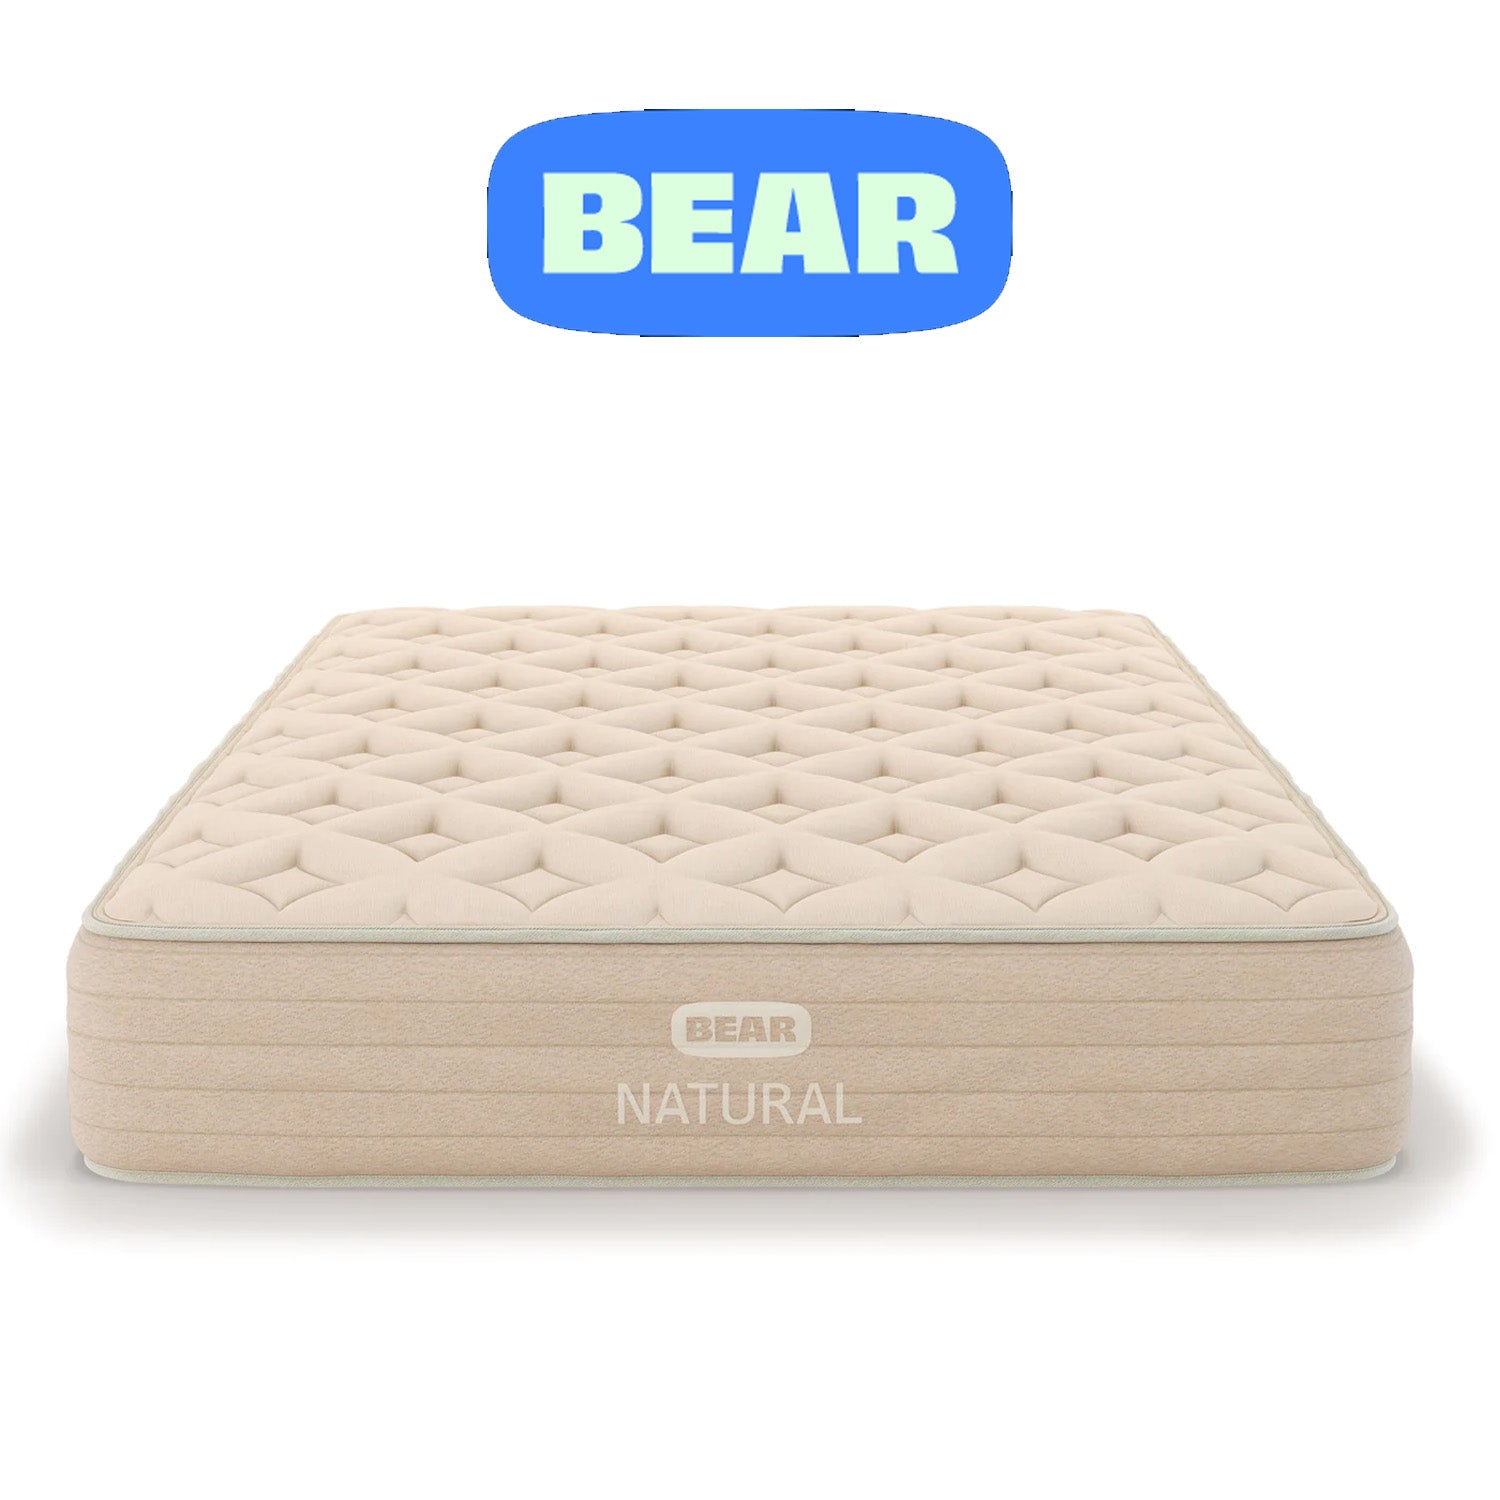 Bear Natural Mattress